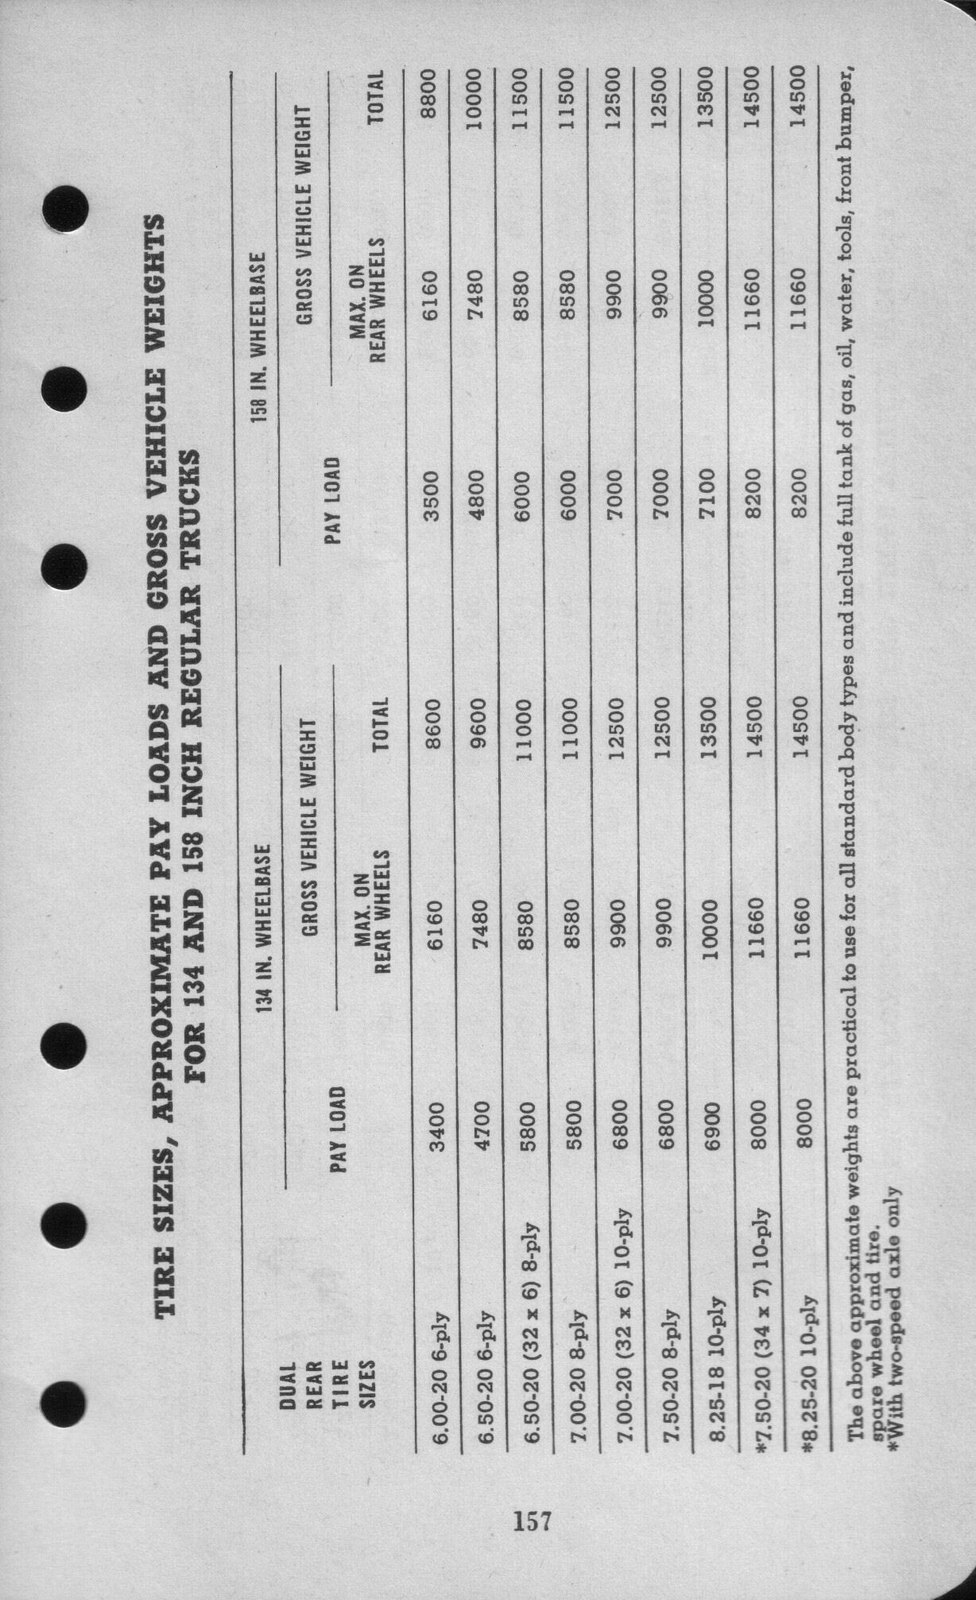 n_1942 Ford Salesmans Reference Manual-157.jpg